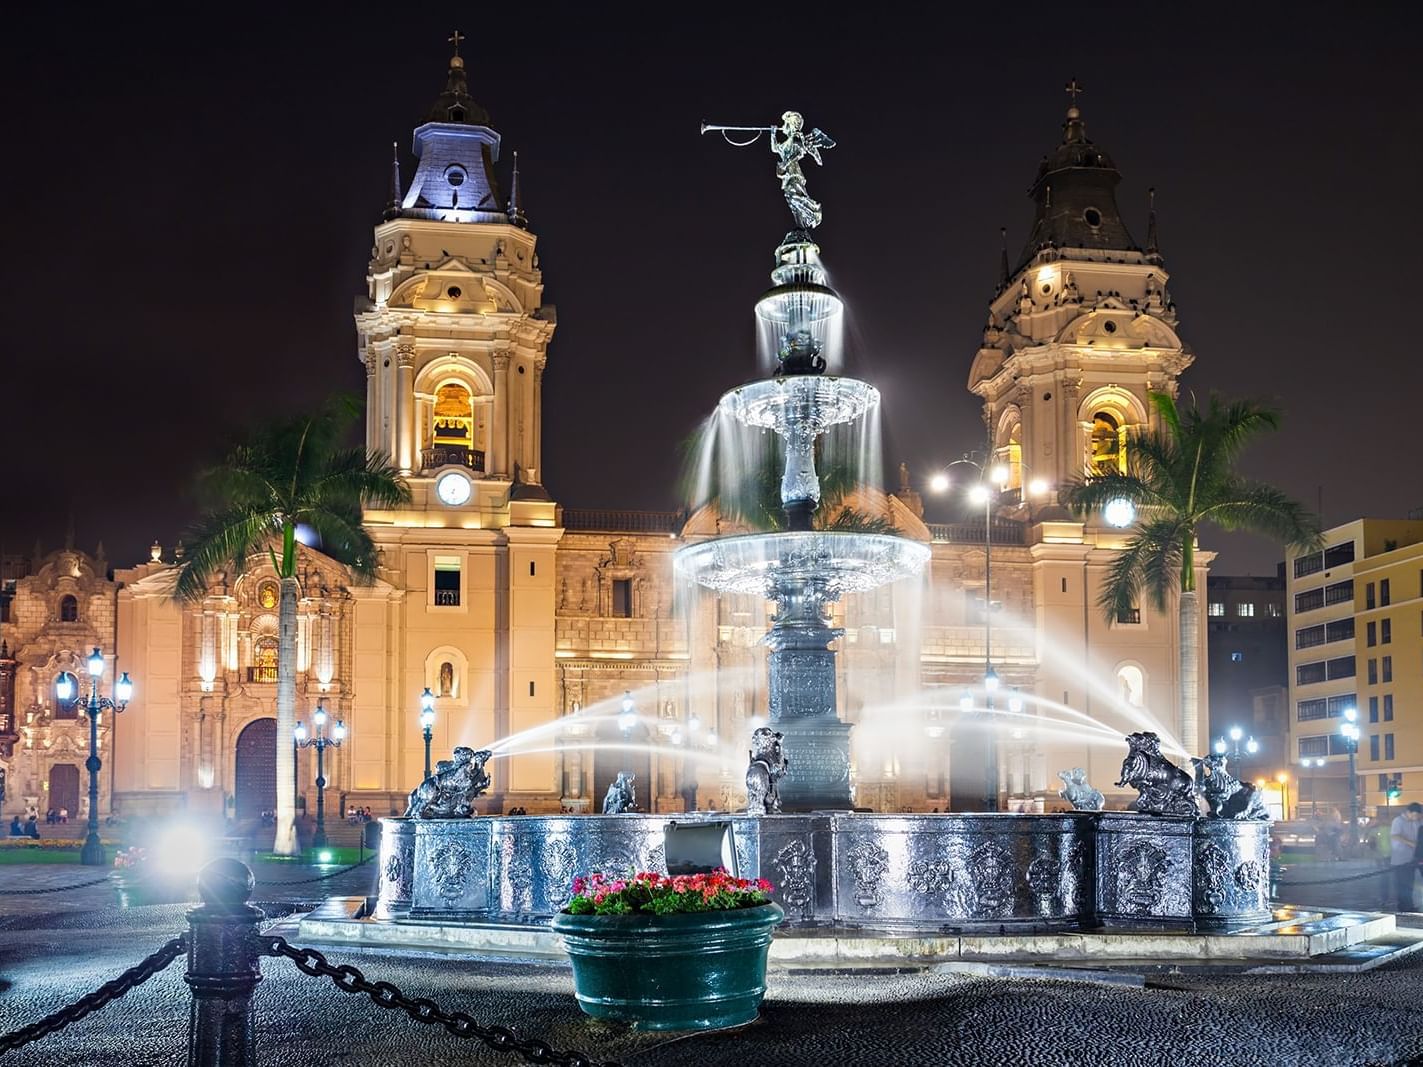 Vista de noche de la plaza de armas de Lima cerca de Delfines Hotel